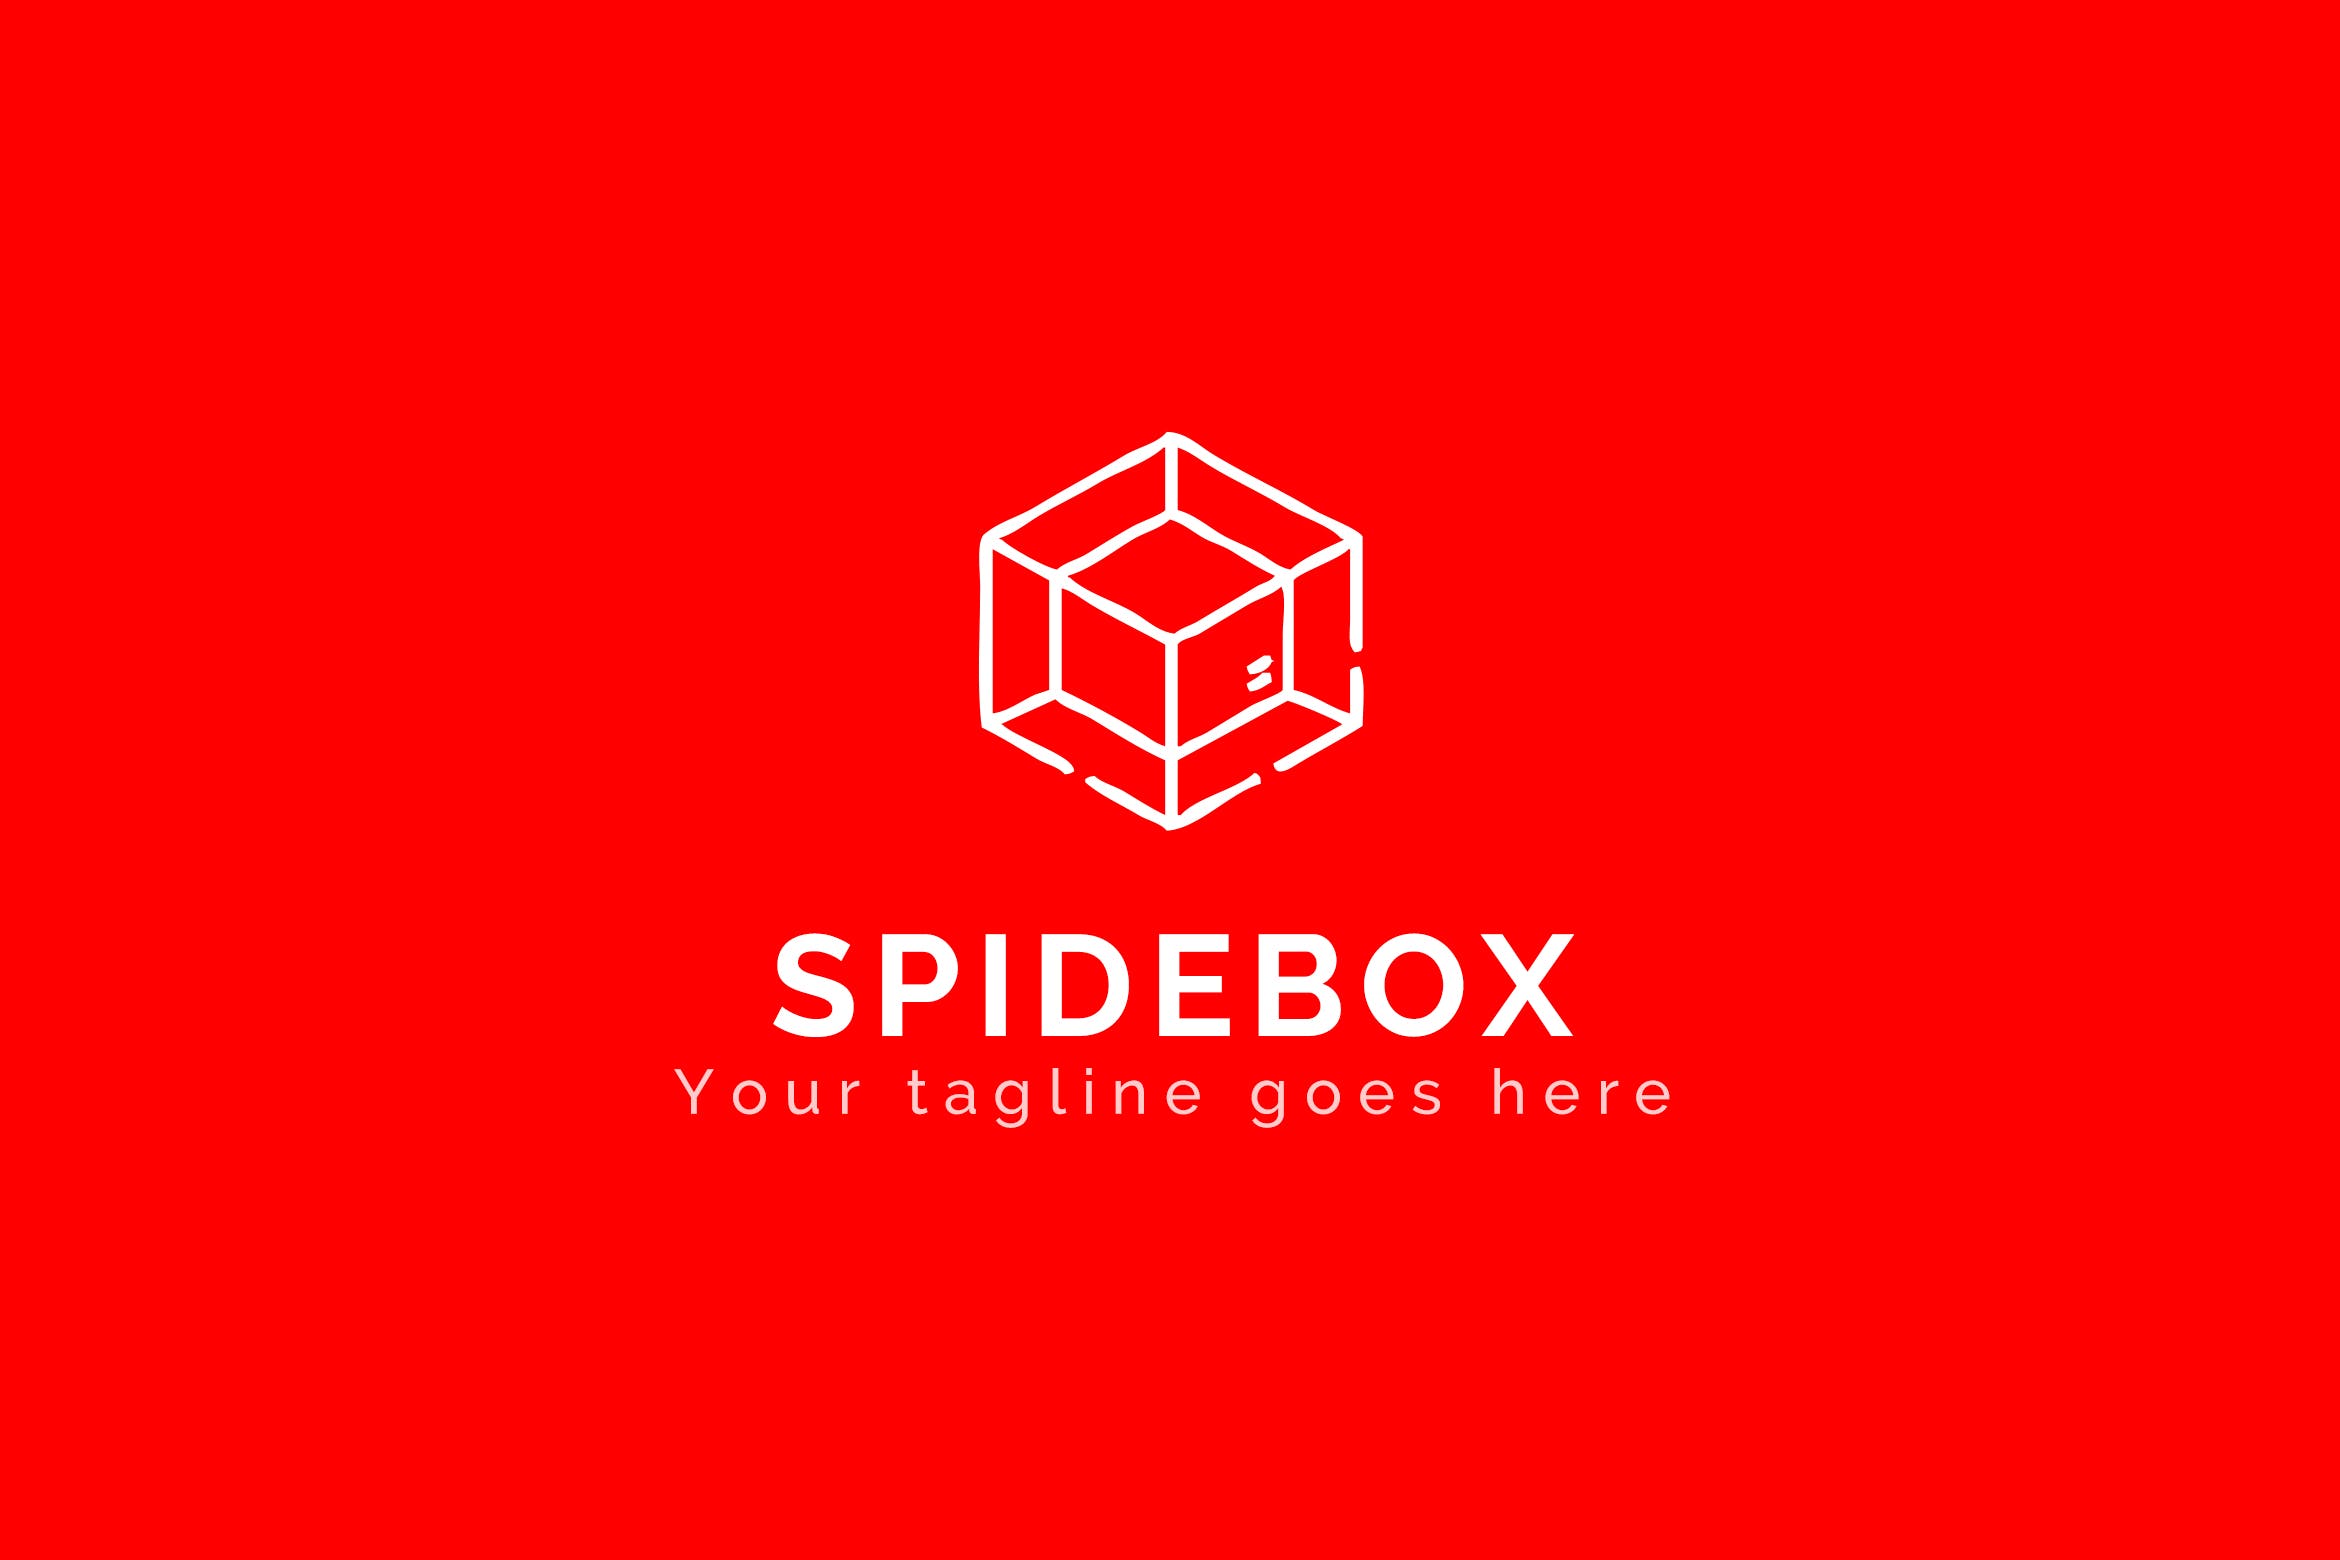 蜘蛛网图形品牌Logo设计蚂蚁素材精选模板 Spidebox – Premium Logo Template插图